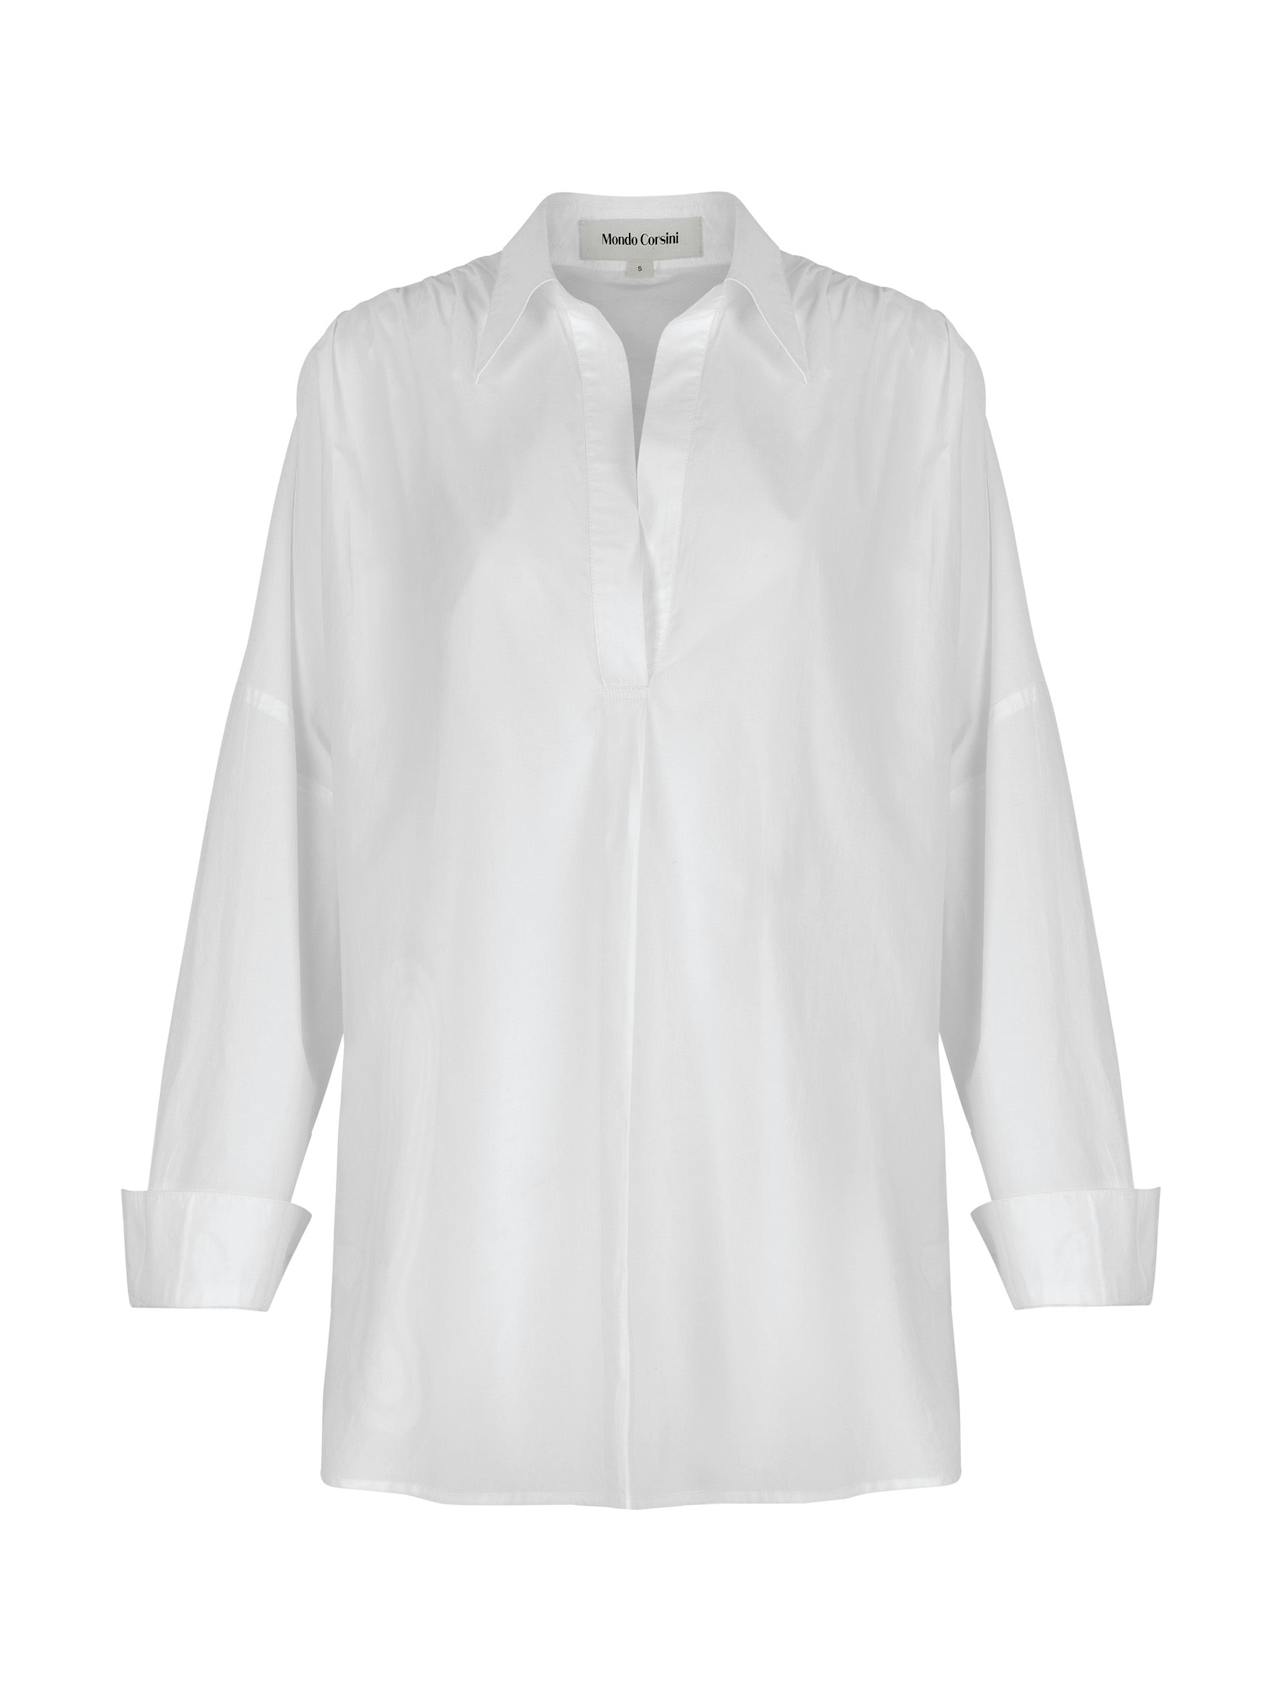 Letizia white cotton shirt